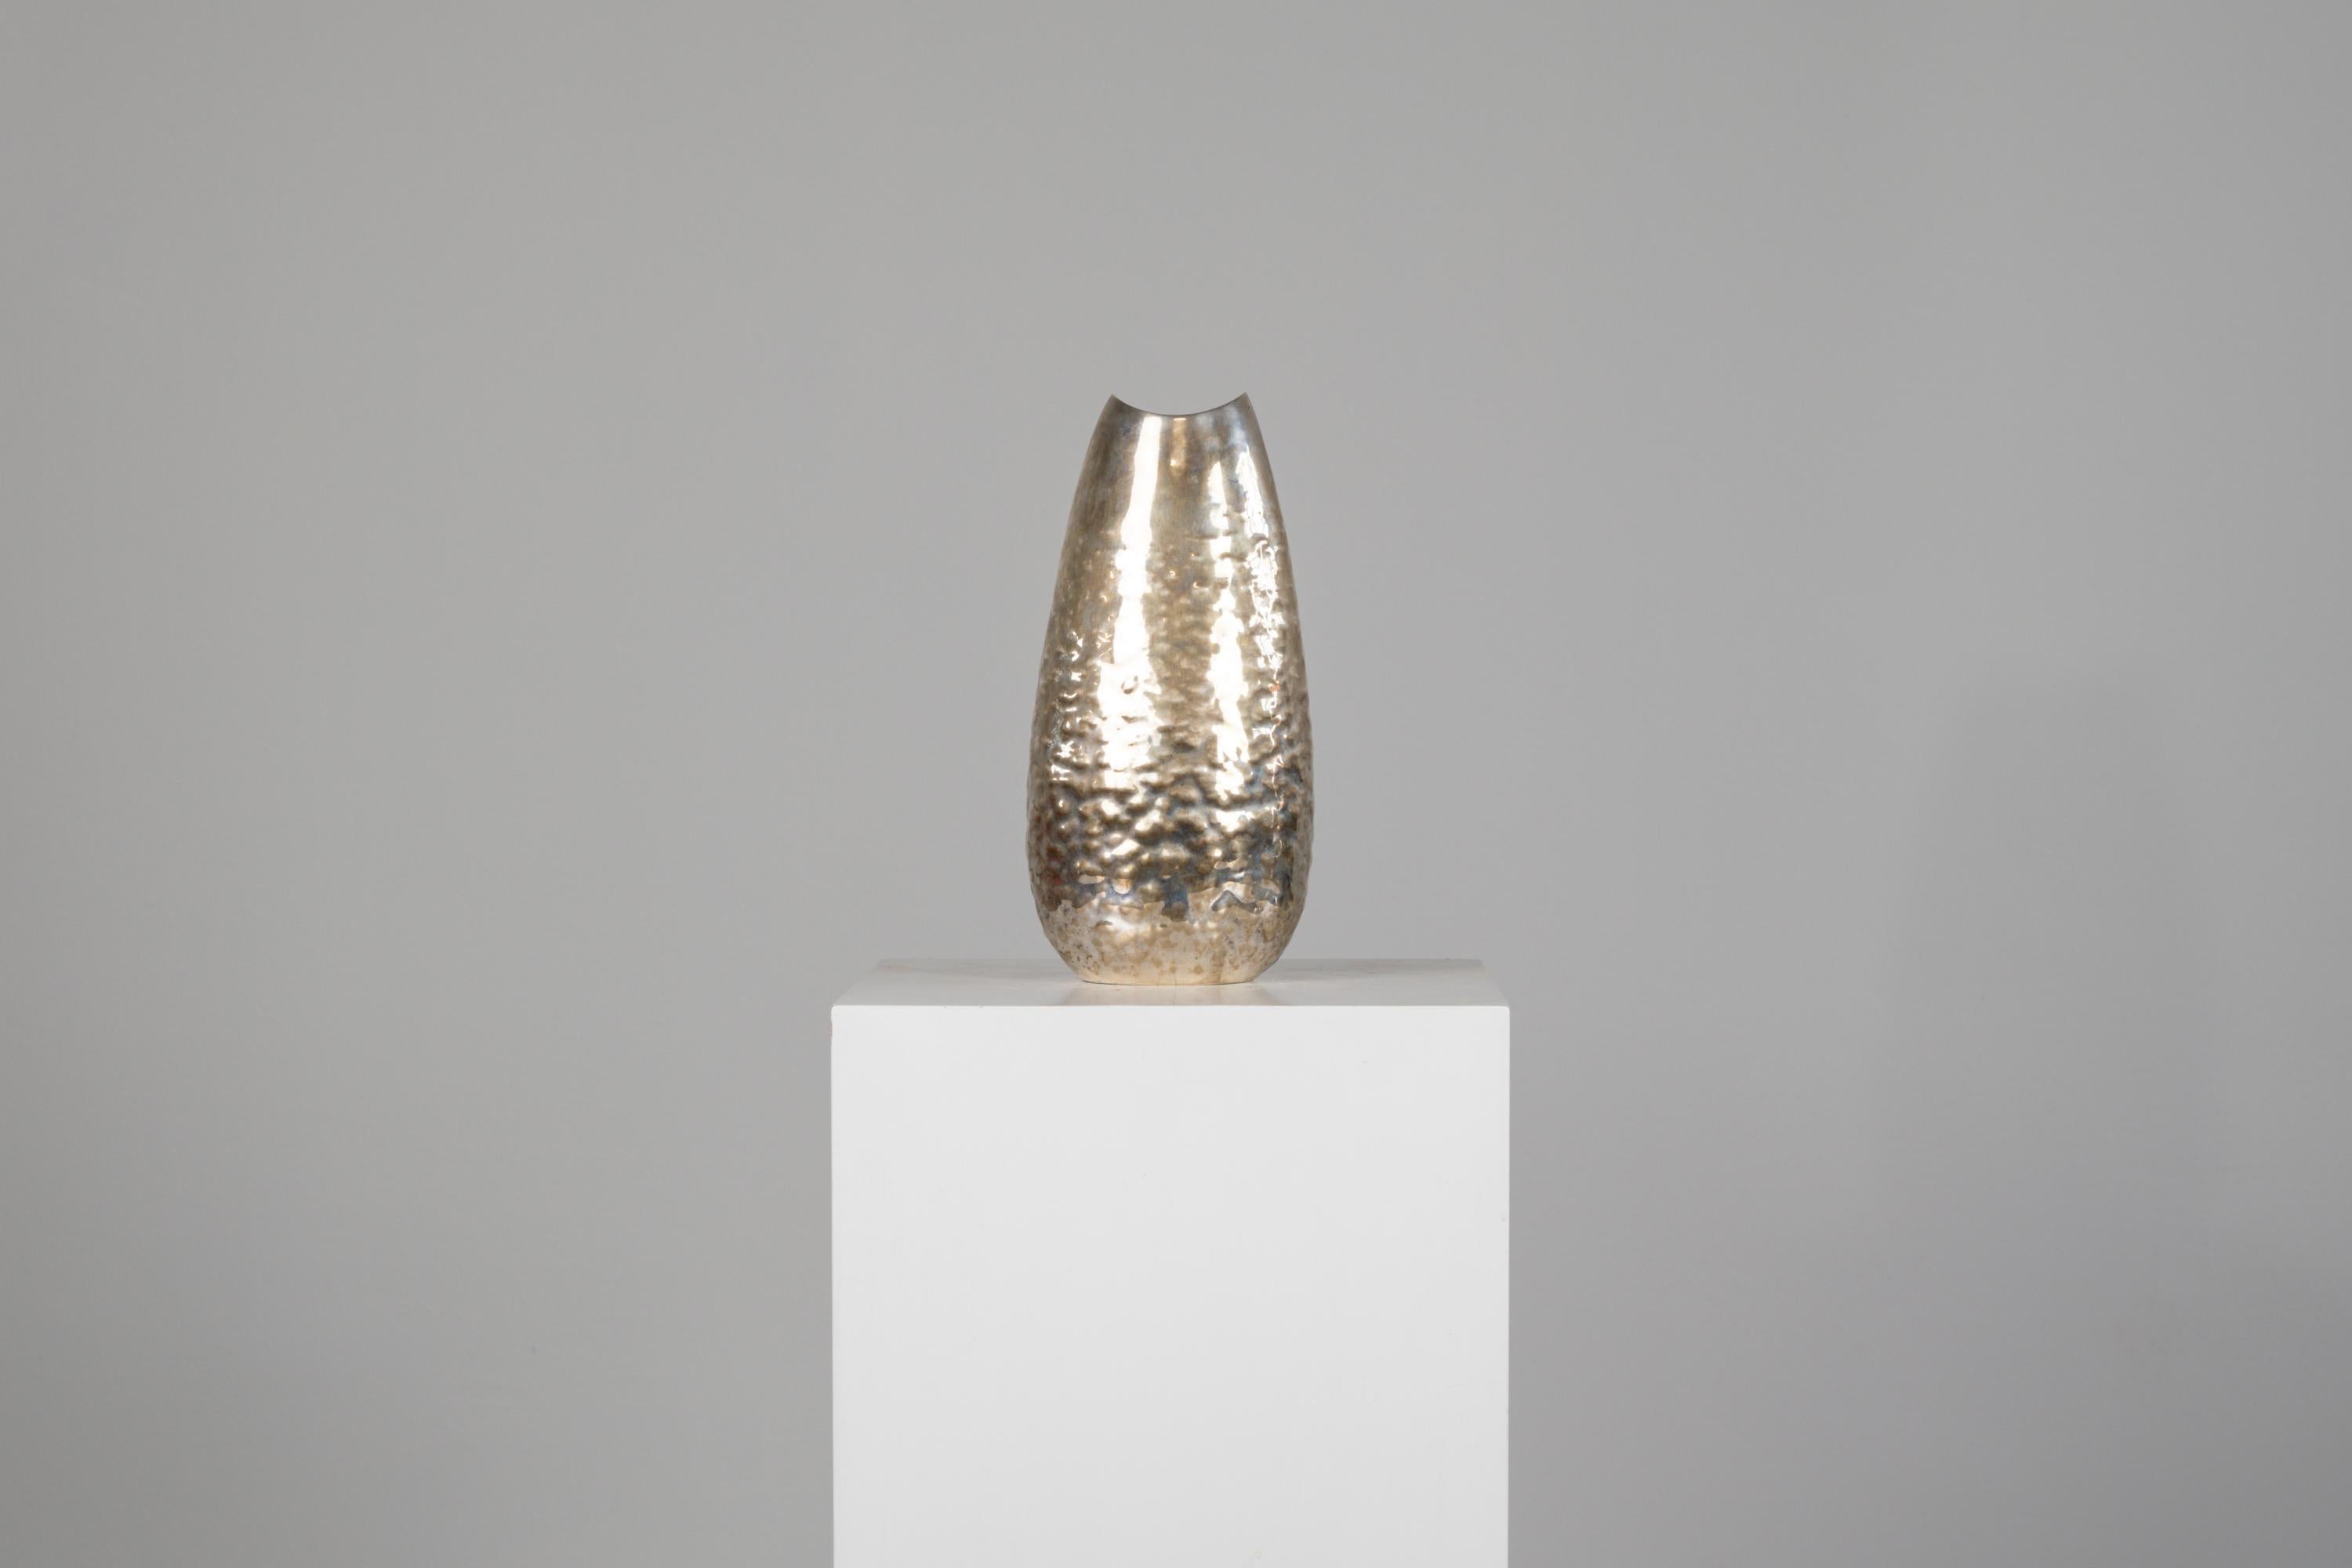 Magnifique vase ovale en argent martelé avec une légère surface en pierre de taille, conçu par Luigi Genazzi et produit par Calderoni.
Marqué sous la base avec la marque du fabricant (Calderoni Jewels)
Datable dans la seconde moitié du 20ème